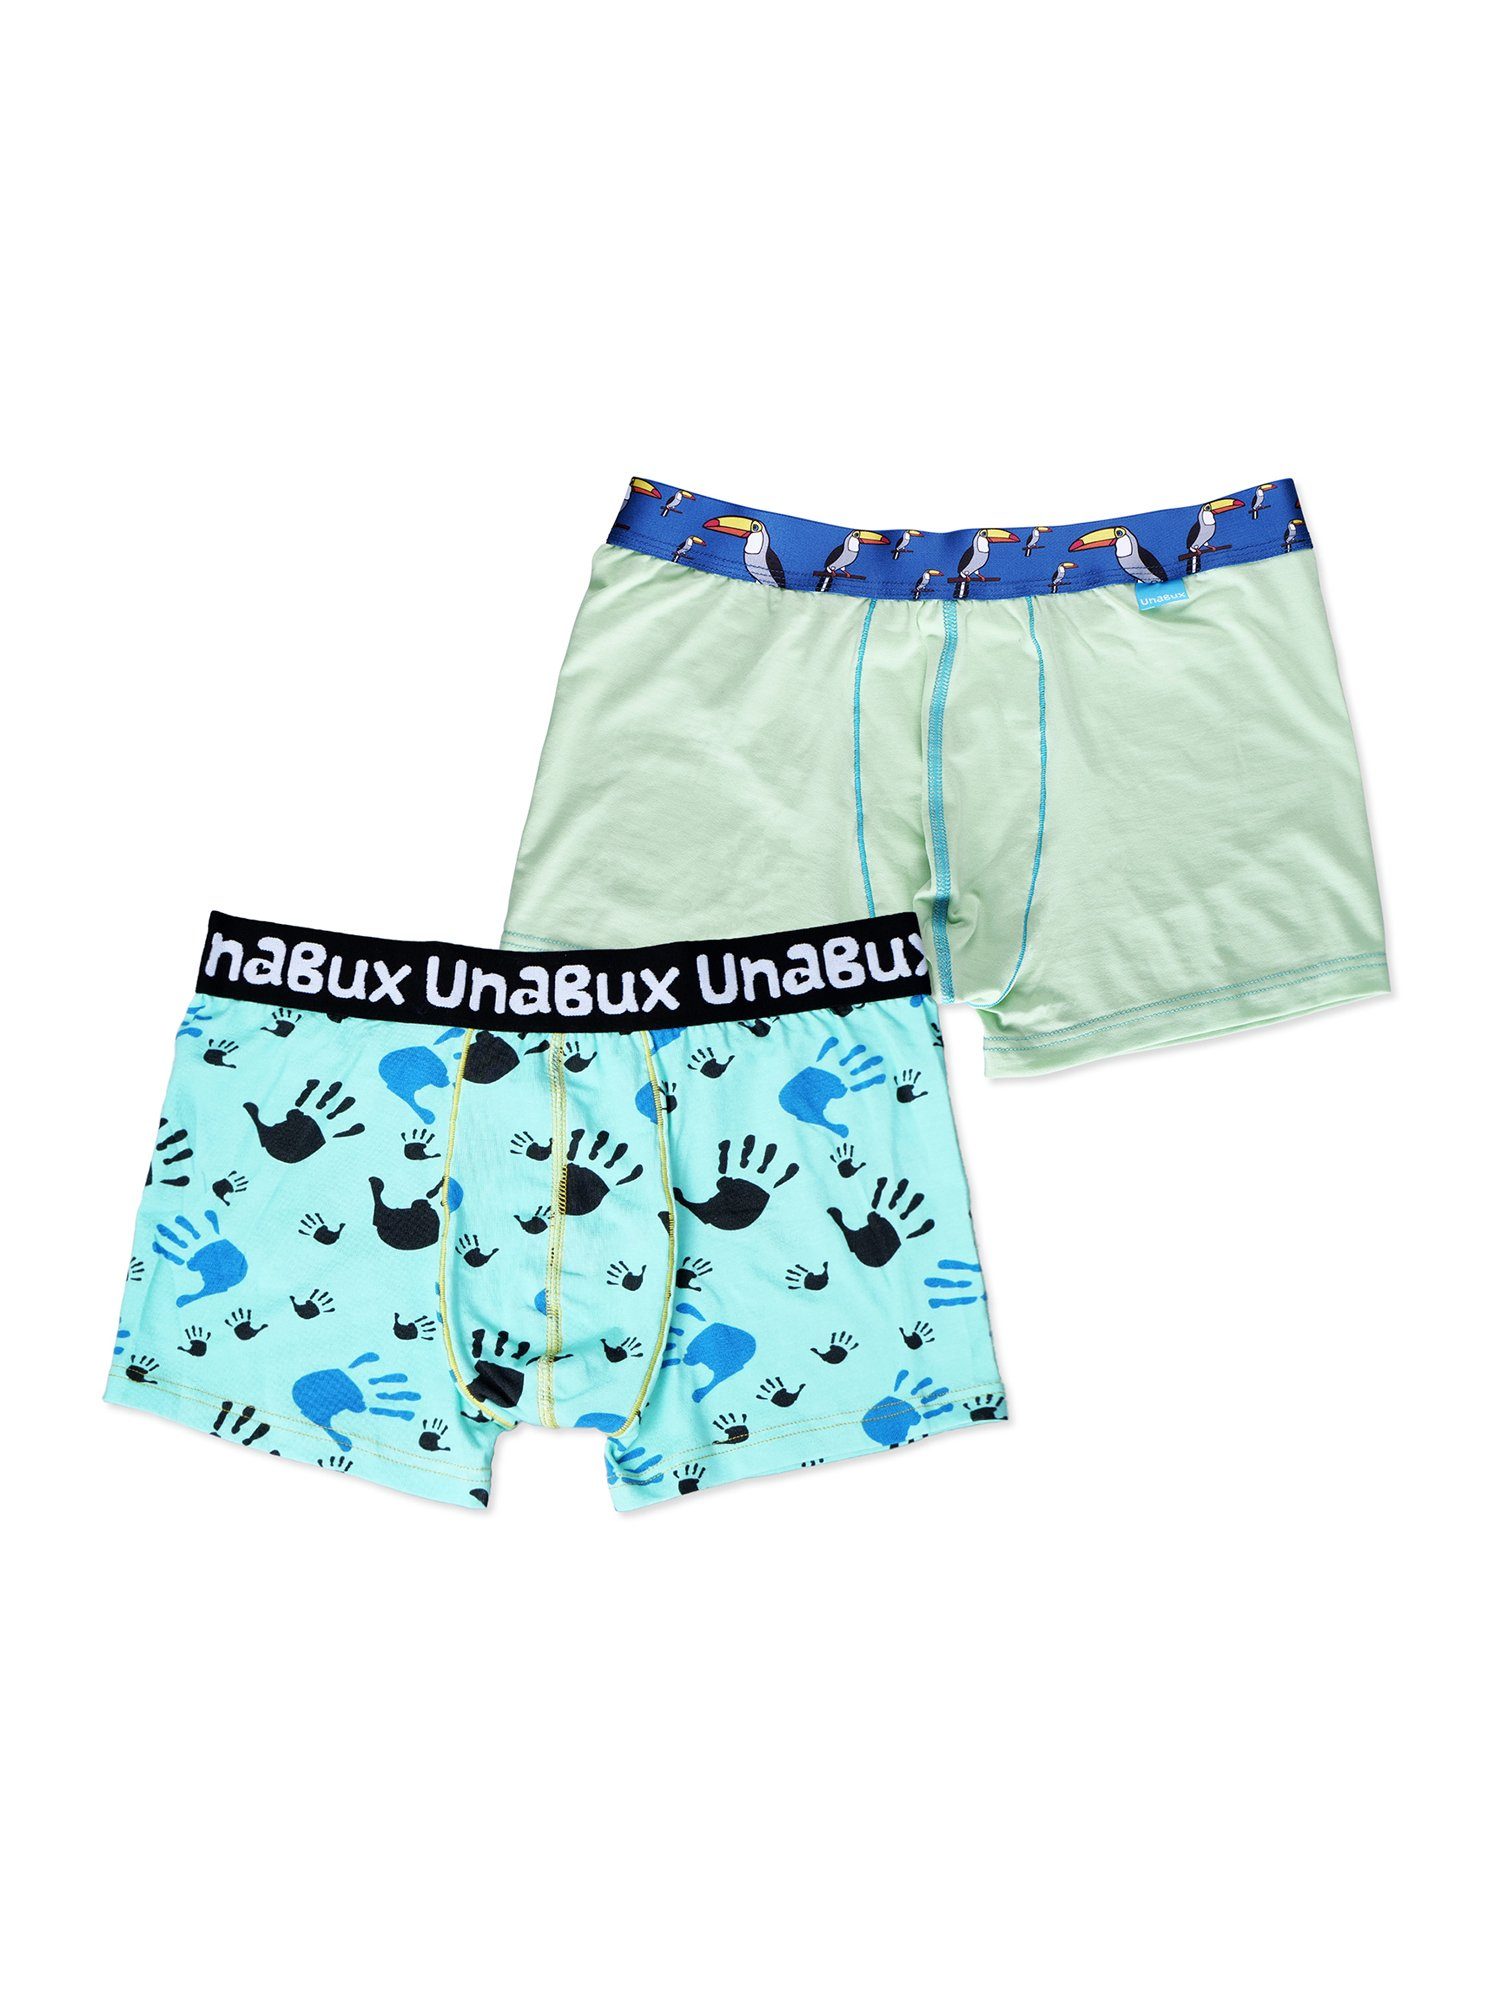 UnaBux Retro Pants Boxer Briefs FIVE FINGERS Mix (2-St) TUCAN DANDY